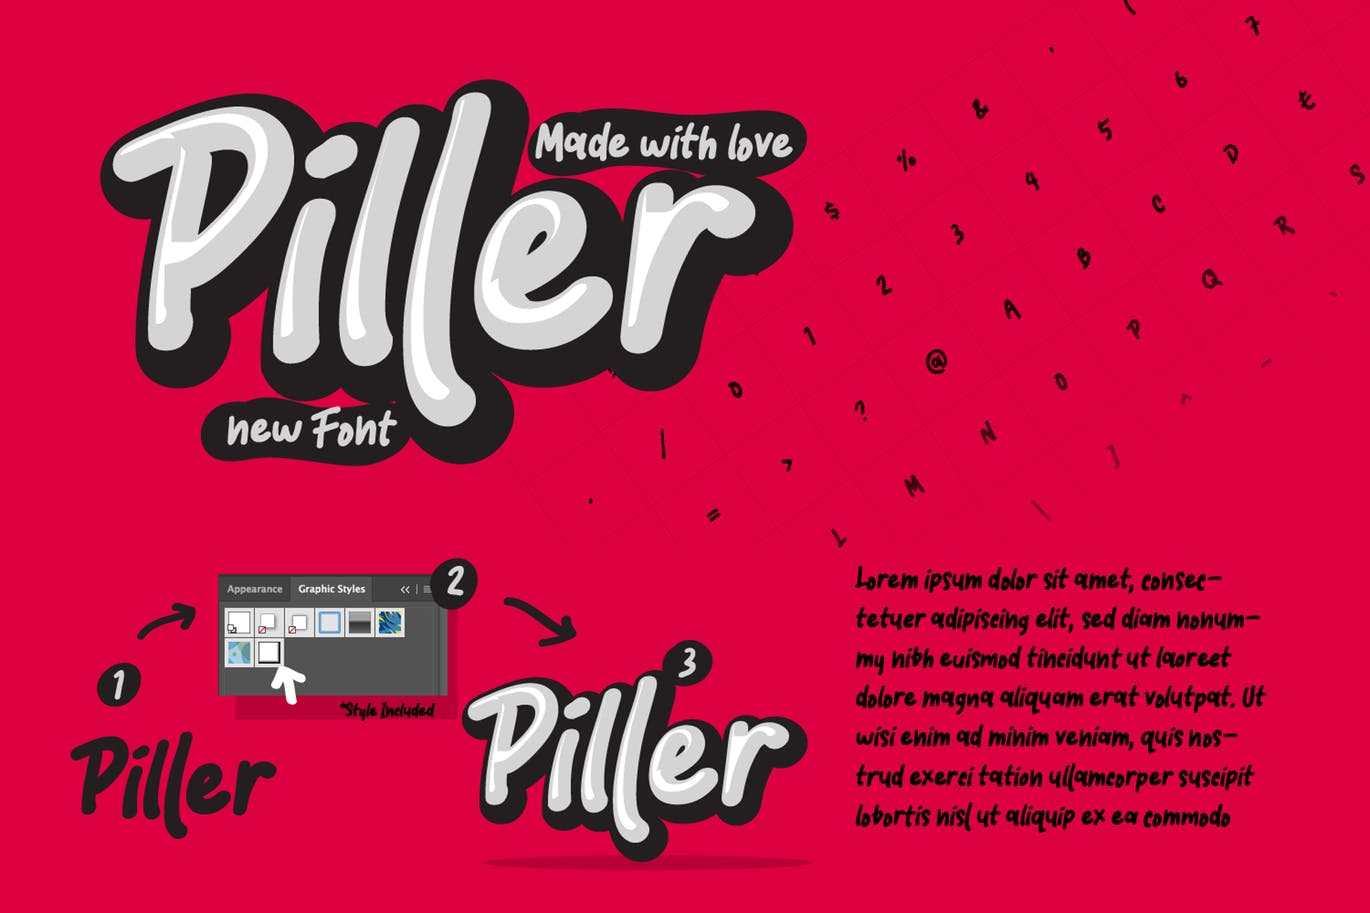 创意休闲时尚英文书法字体第一素材精选 Piller the casual trendy font插图